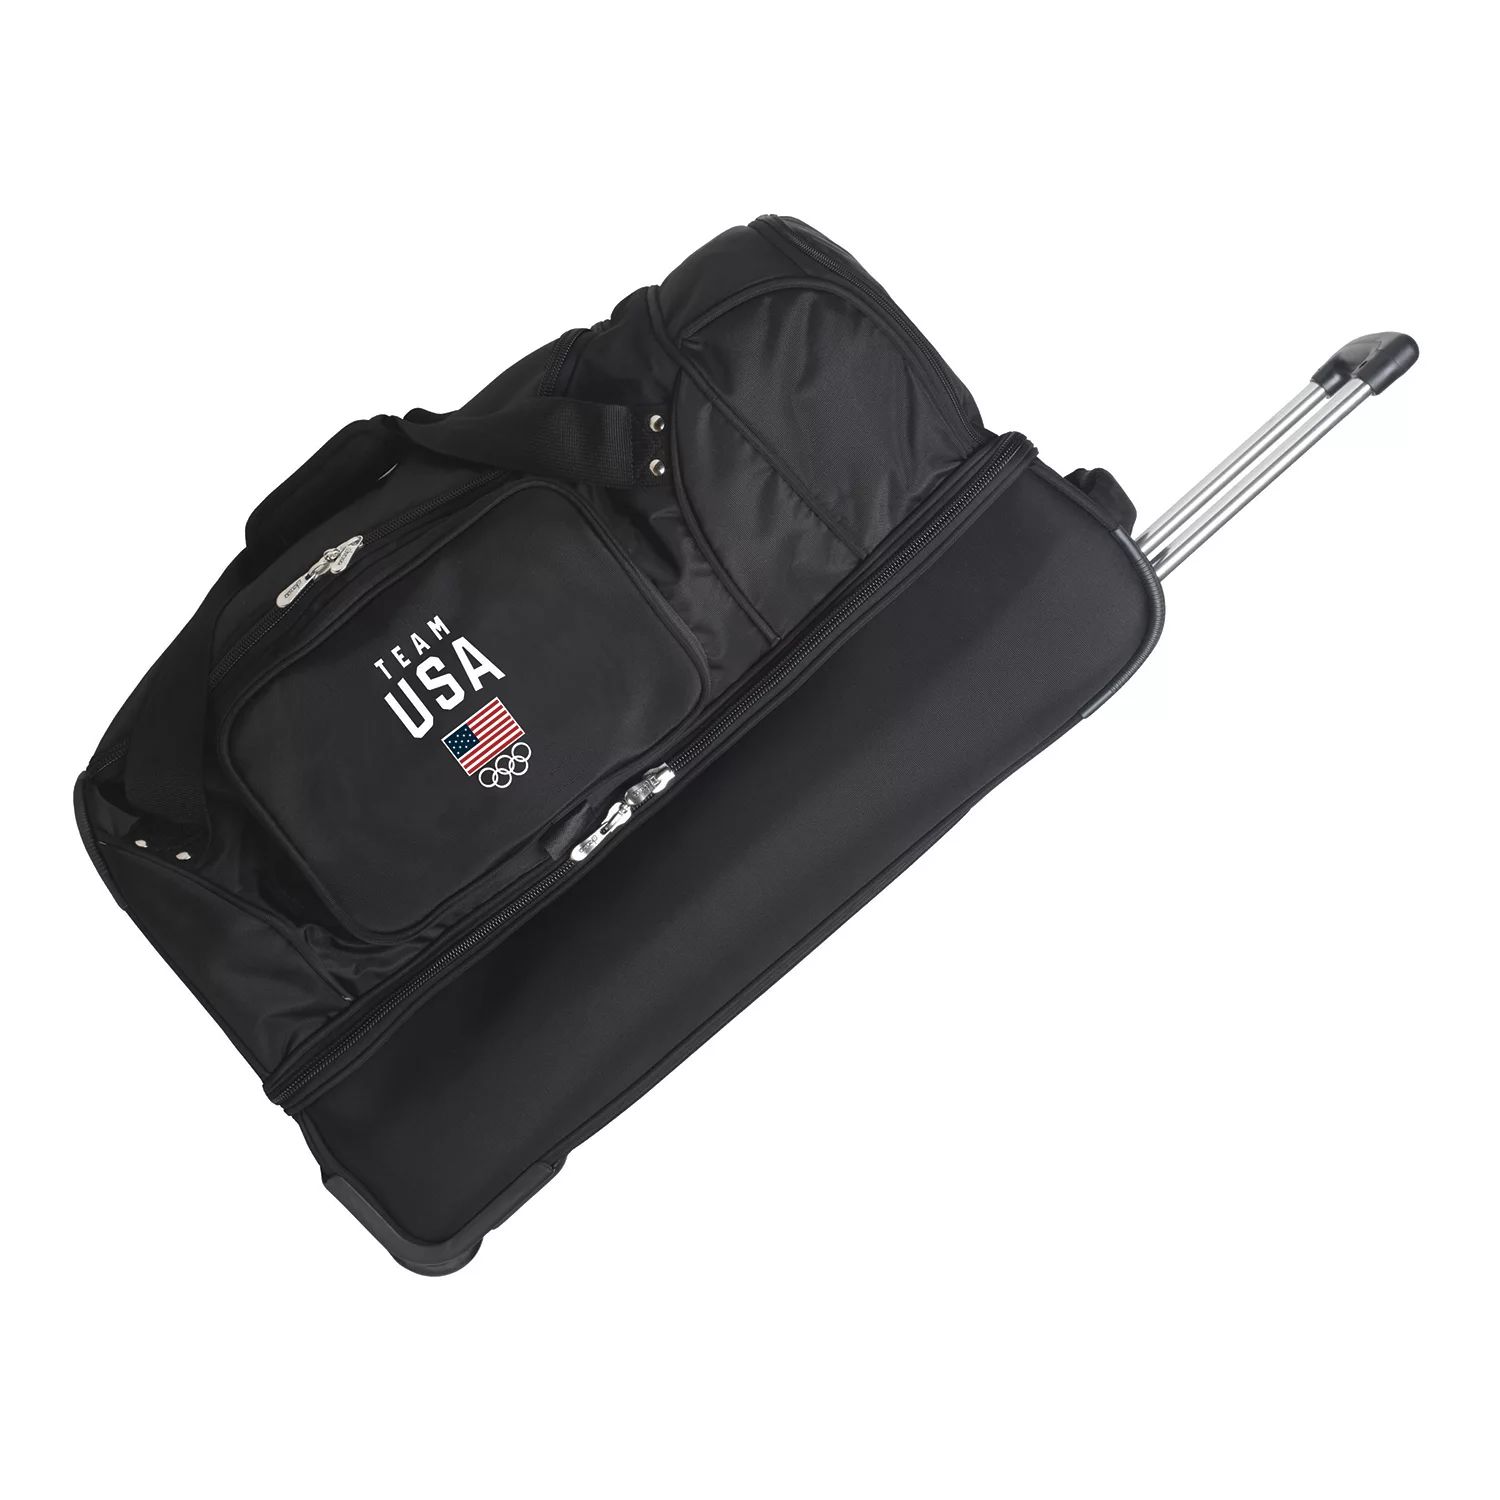 Спортивная сумка Denco с откидным дном, 27 дюймов, олимпийская сборная США Denco